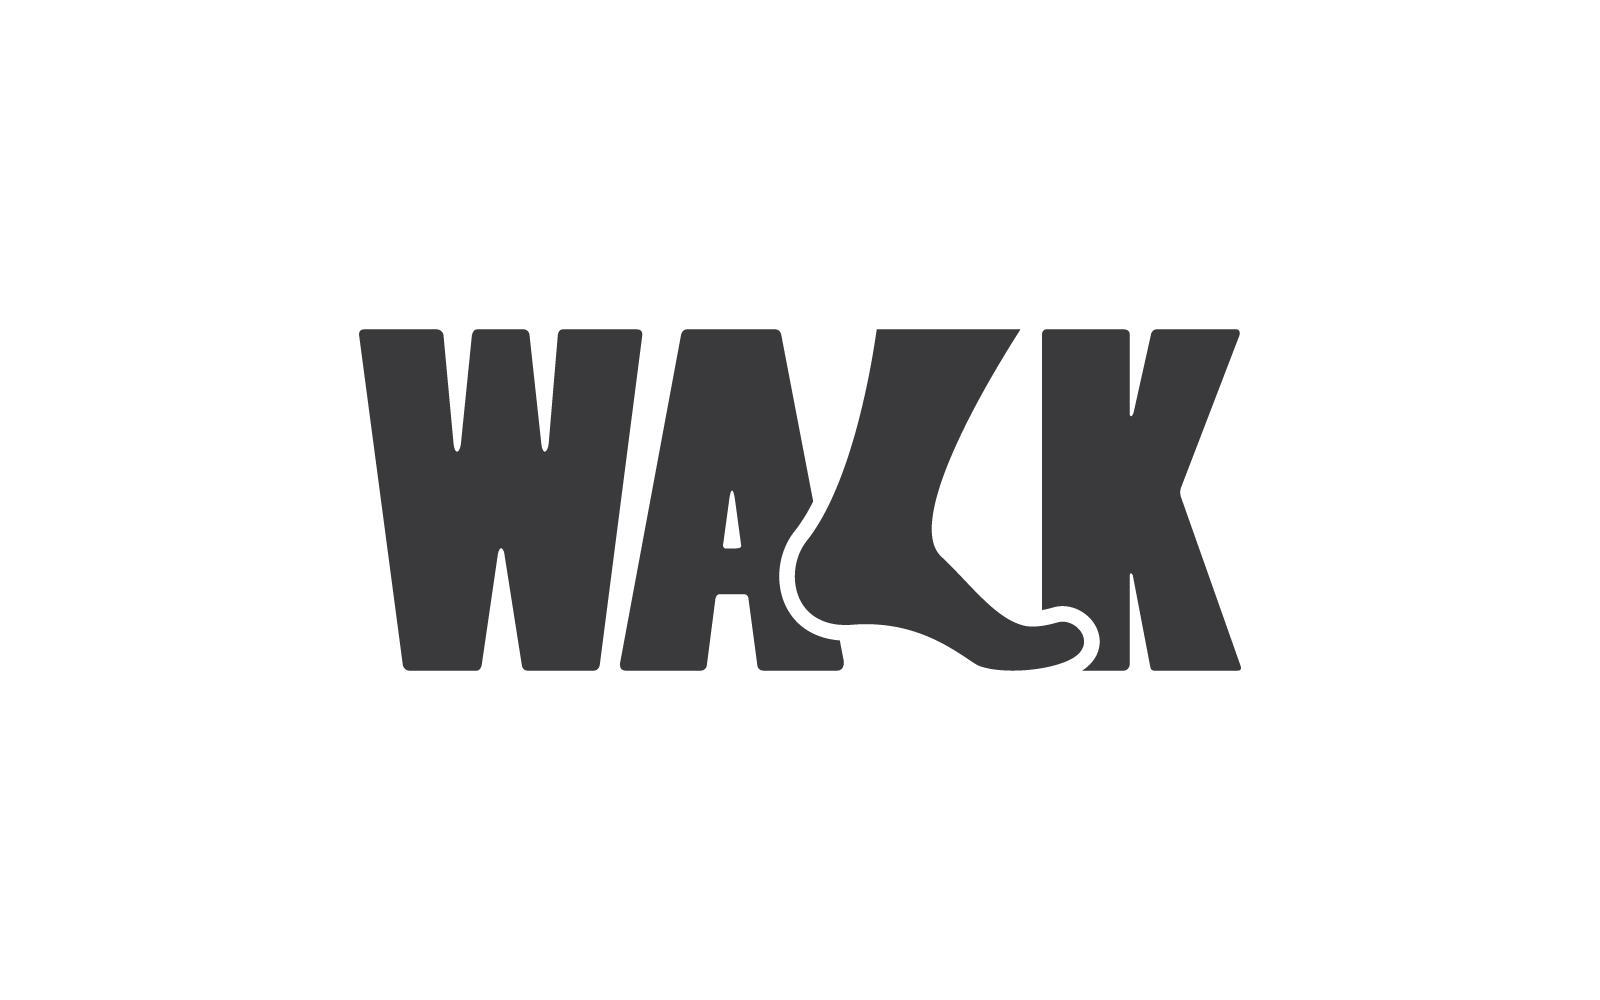 Foot walk illustration logo vector design